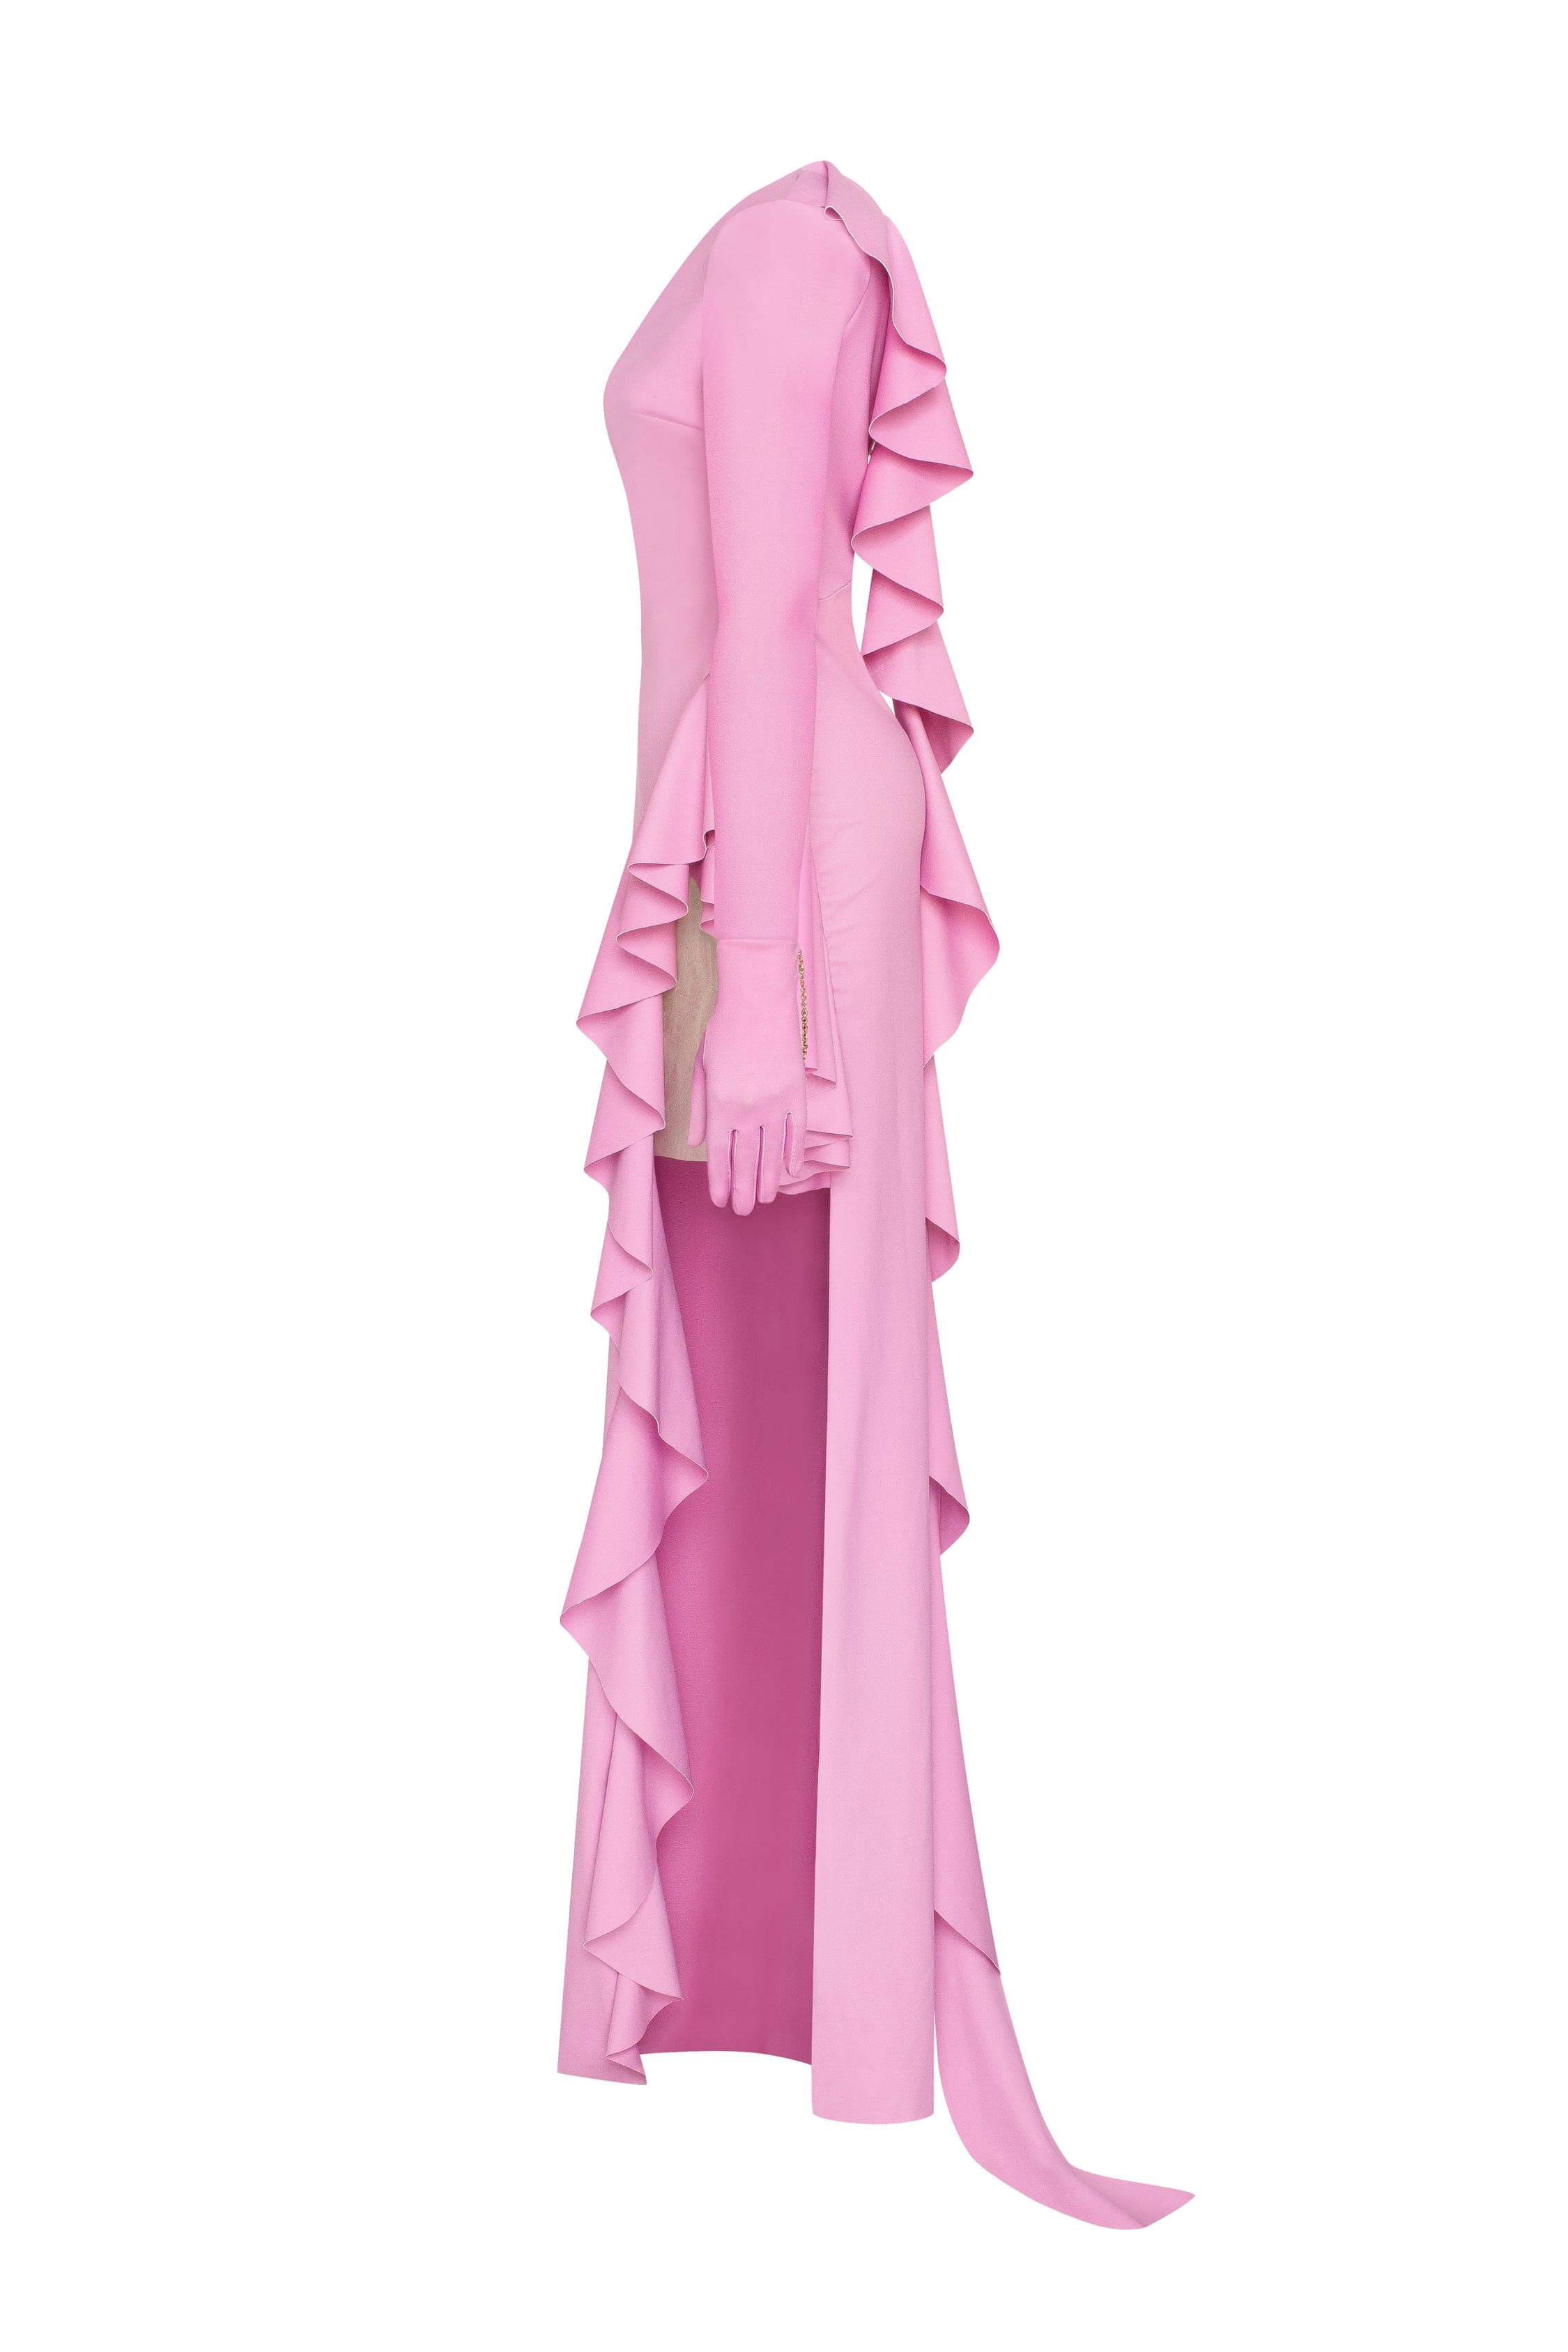 فستان ماكسي بكتف واحد ومكشكش باللون الوردي